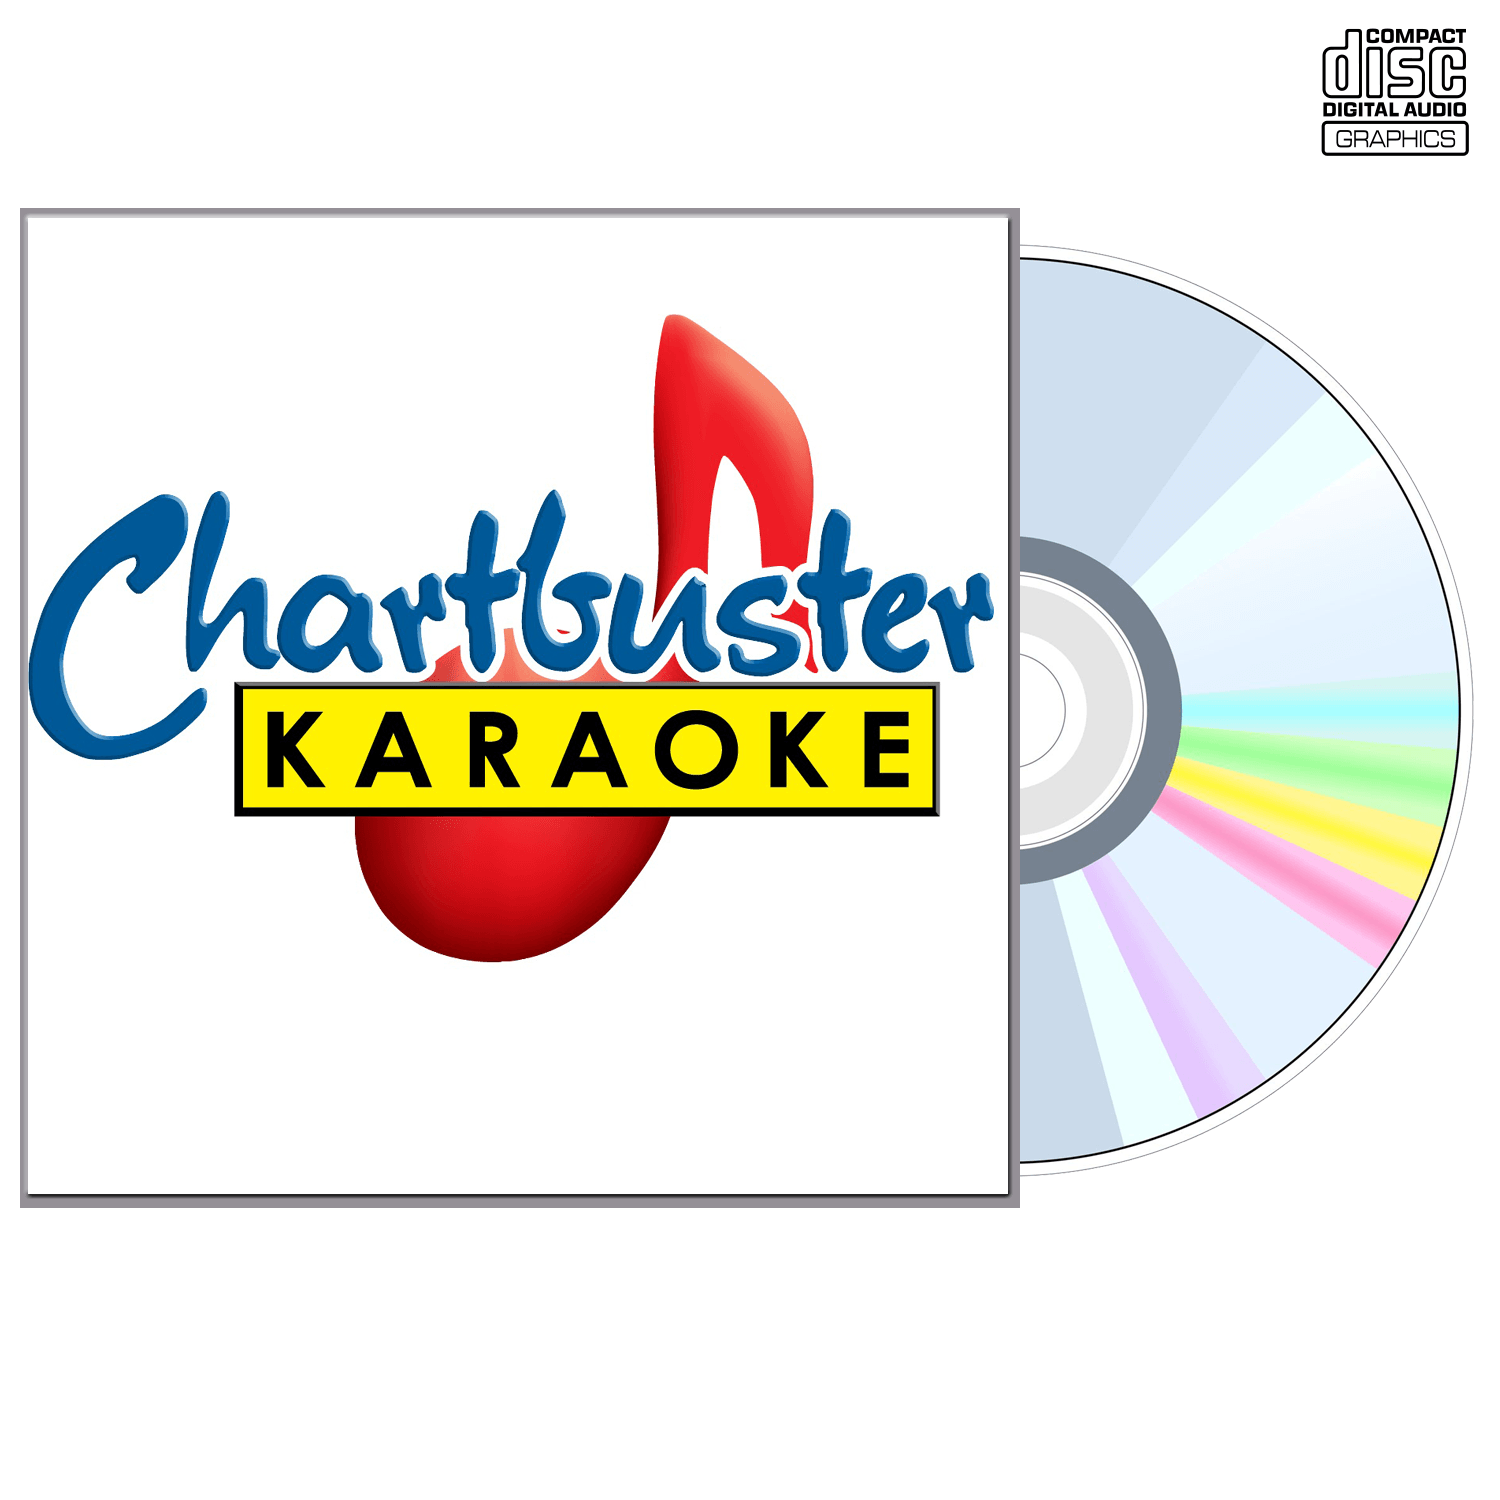 Lynn Anderson - CD+G - Chartbuster Karaoke - Karaoke Home Entertainment